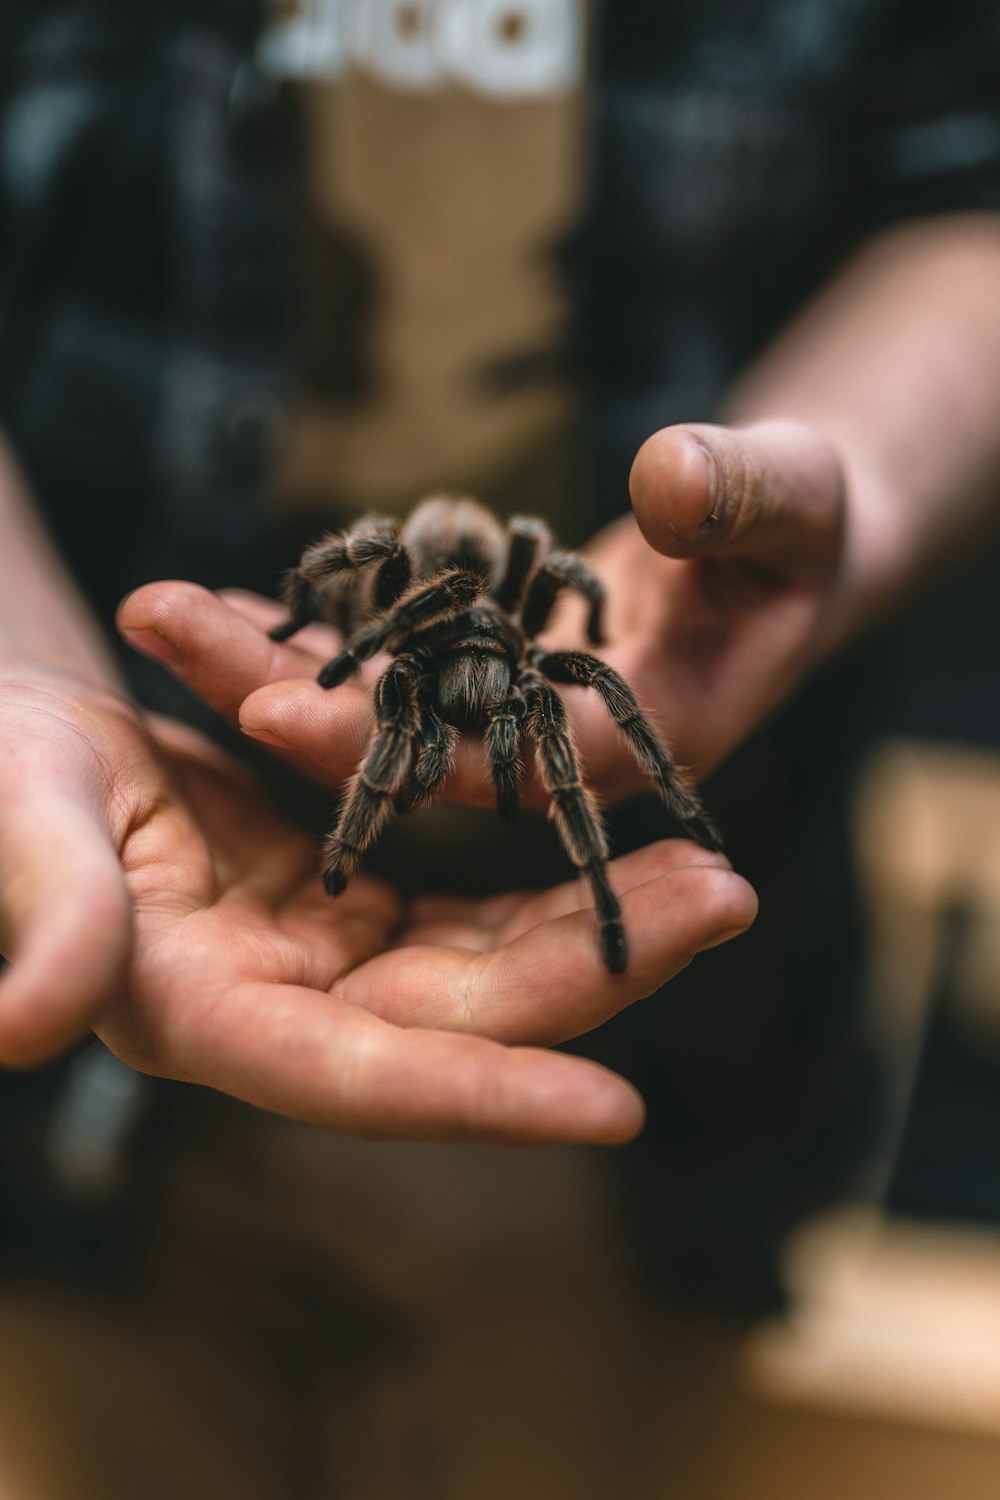 une personne tenant une araignée dans ses mains